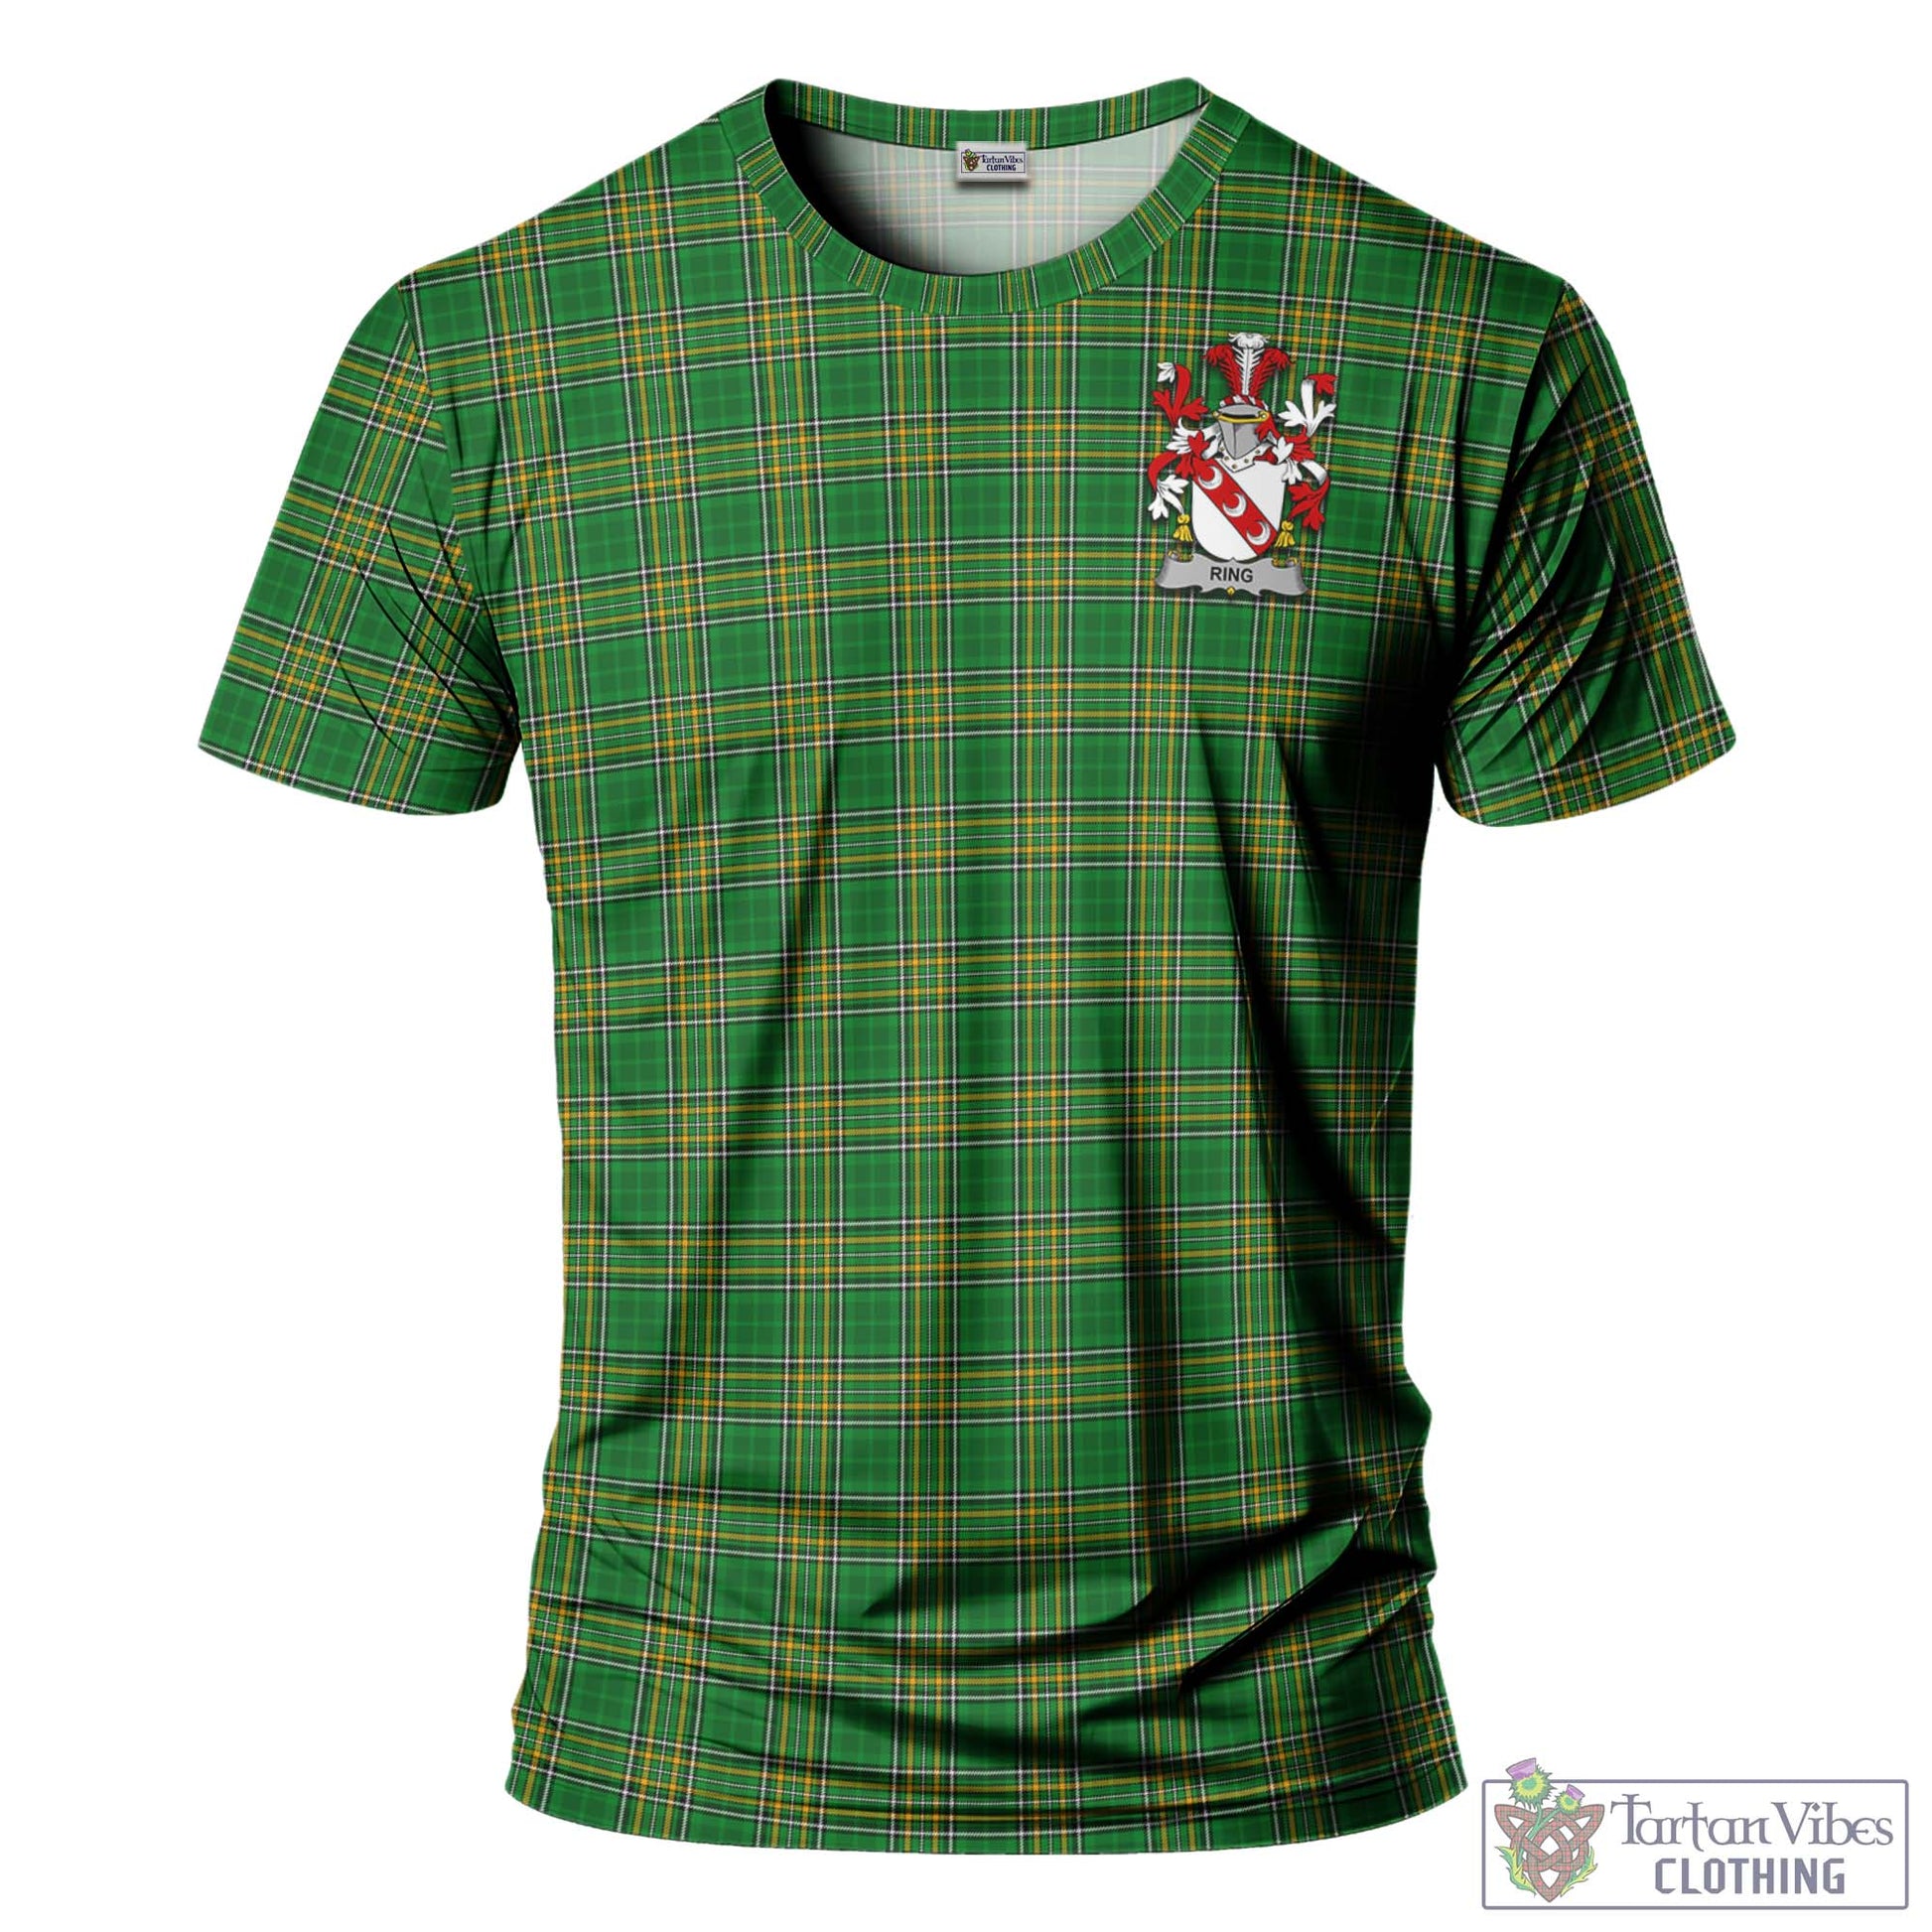 Tartan Vibes Clothing Ring Ireland Clan Tartan T-Shirt with Family Seal